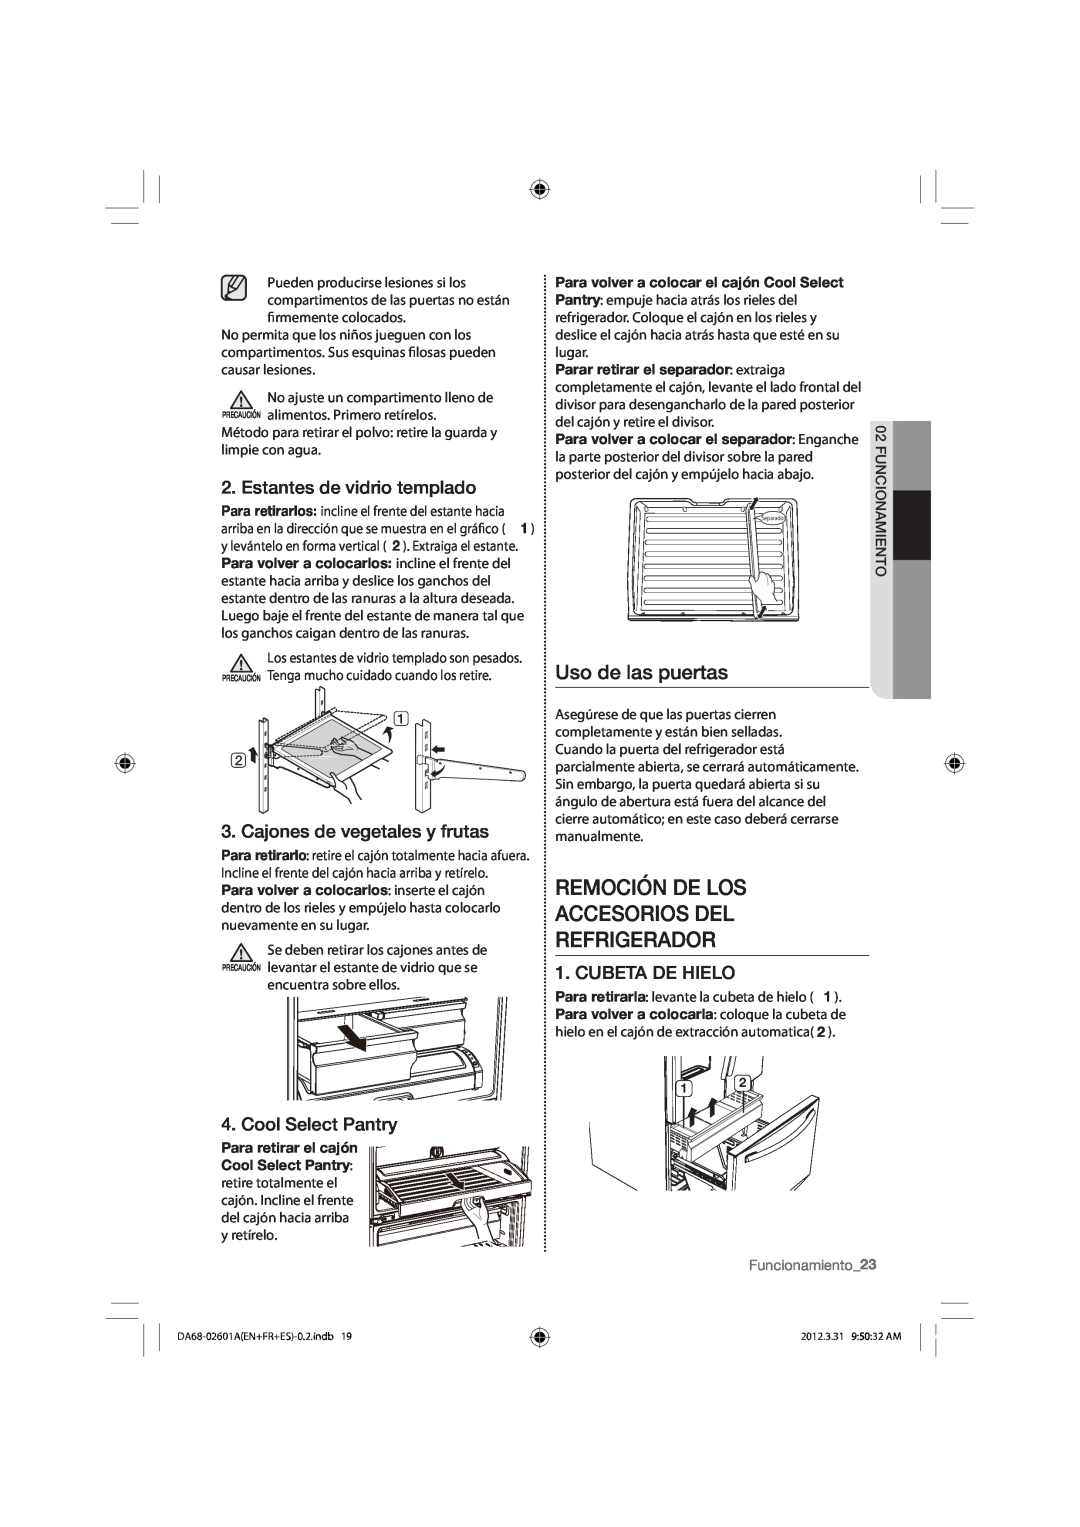 Samsung RF263BEAEBC Remoción De Los Accesorios Del Refrigerador, Uso de las puertas, Estantes de vidrio templado 